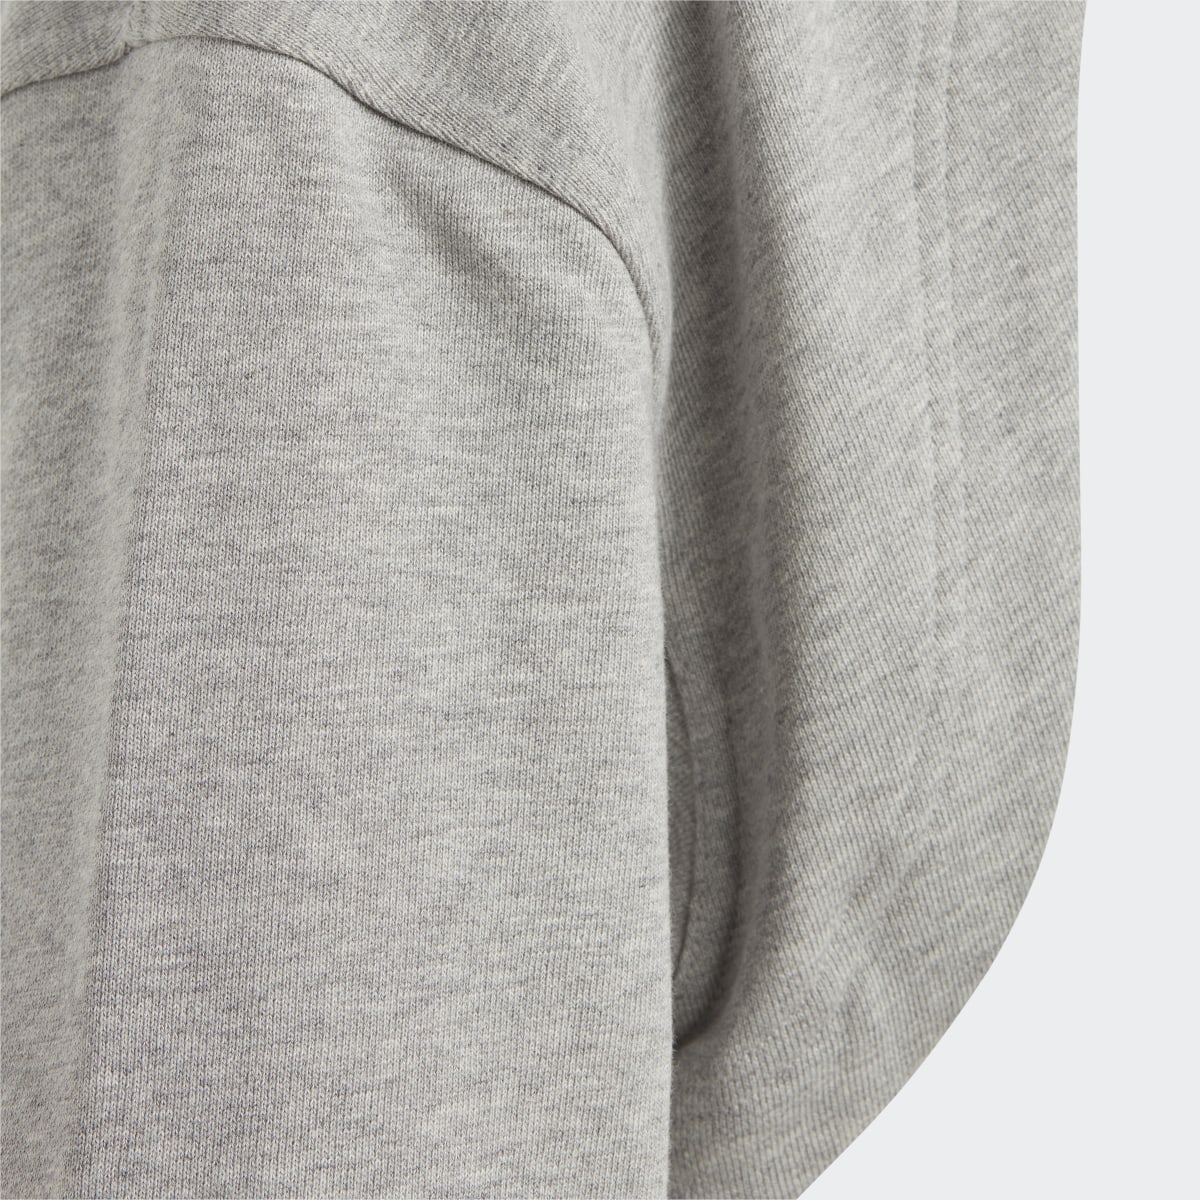 Adidas by Stella McCartney TrueCasuals Cropped Sportswear Sweatshirt. 9